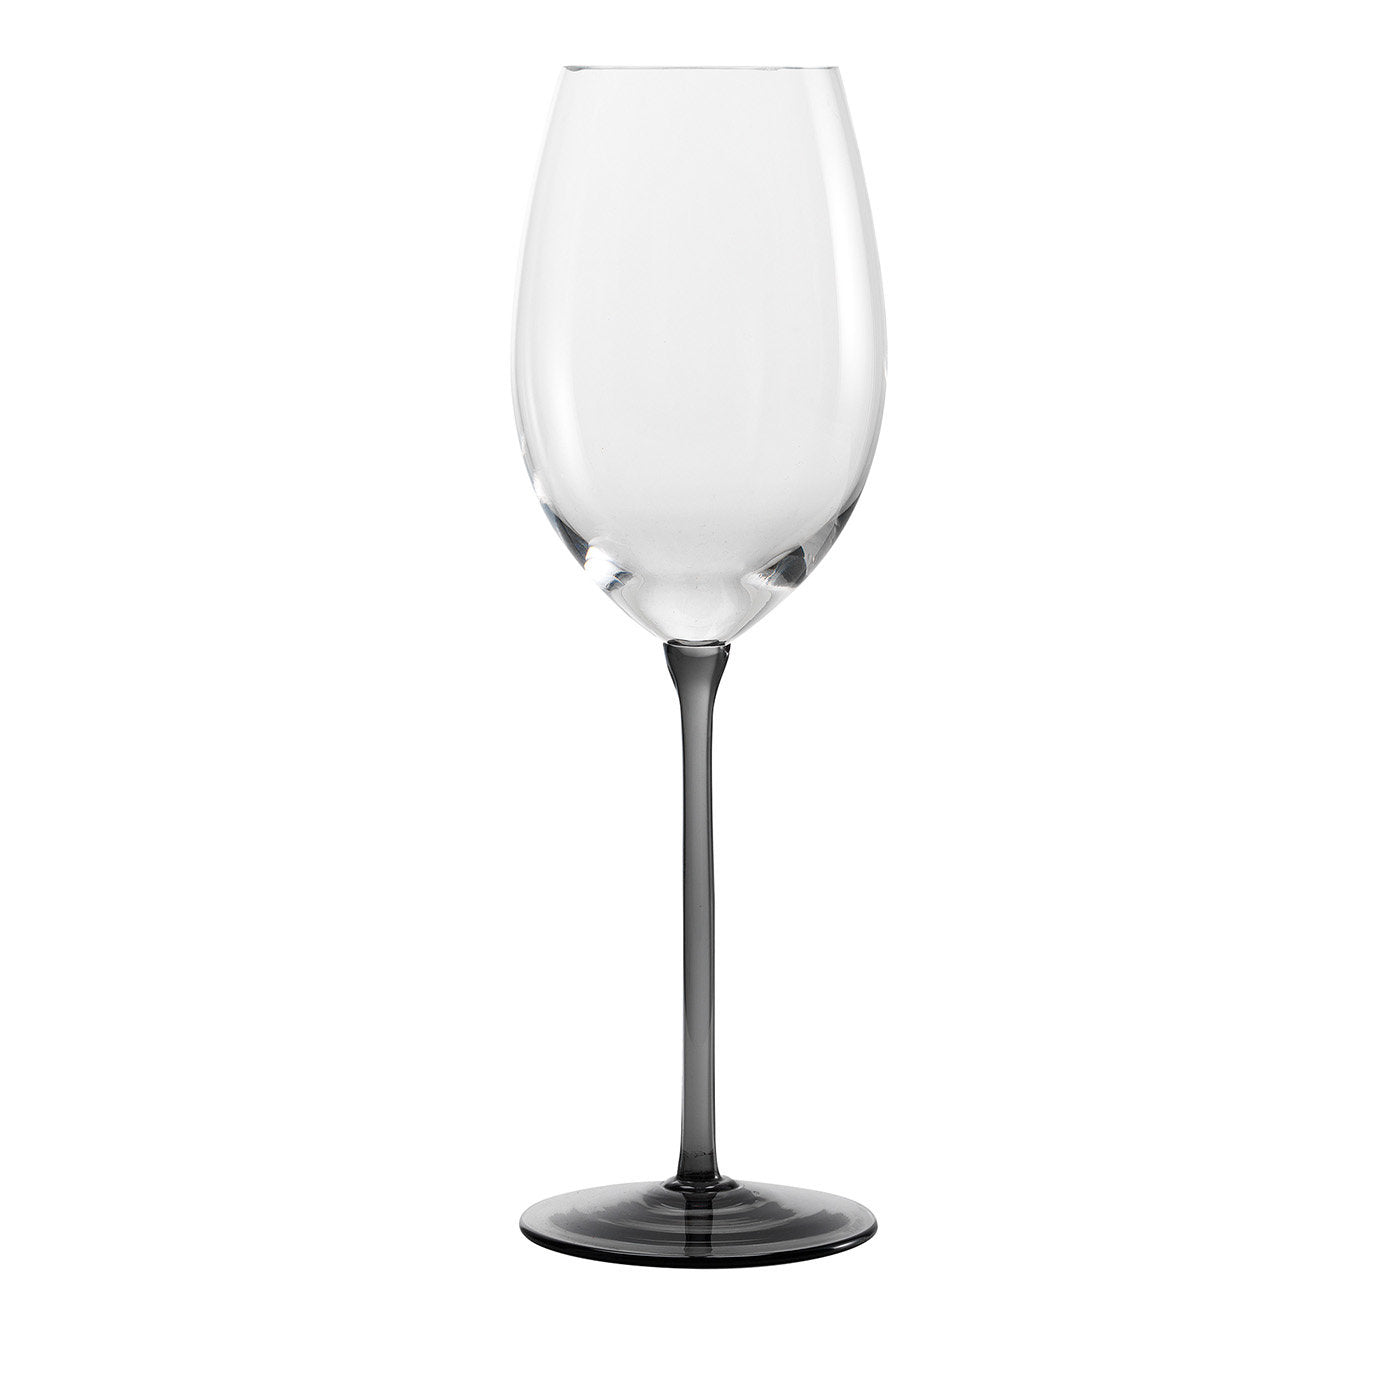 Bicchiere da vino bianco e nero più alto - Vista principale